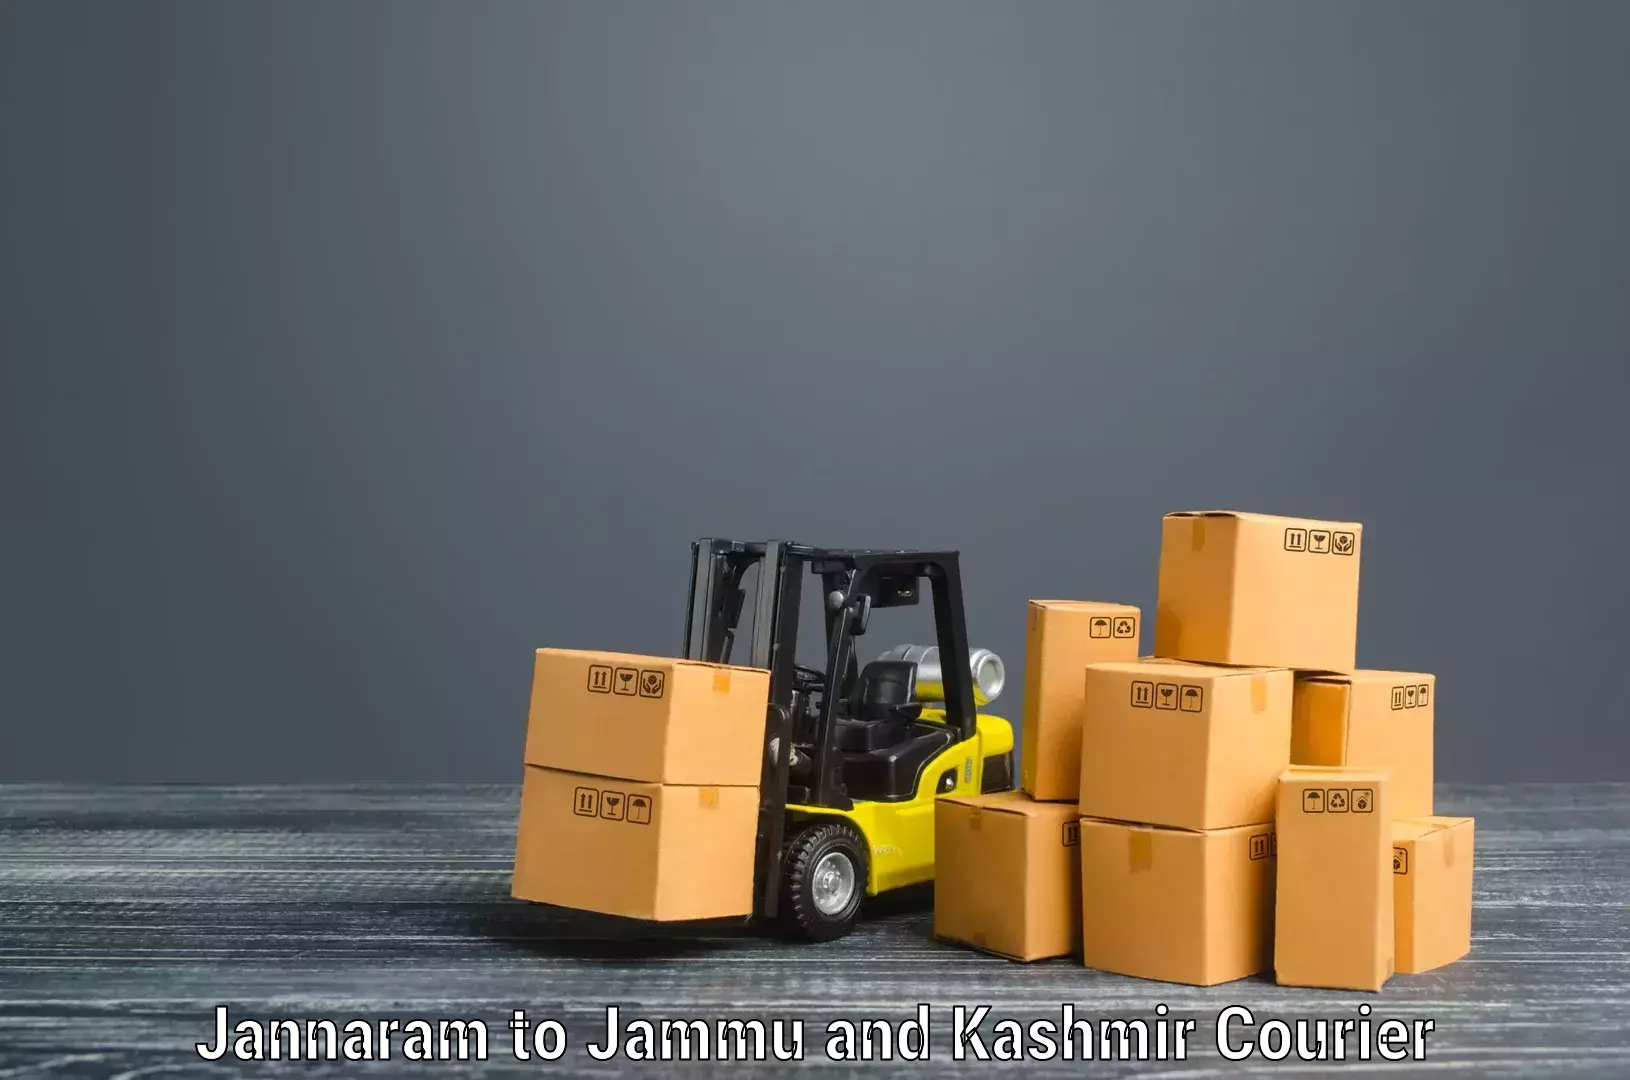 Quality moving company Jannaram to Sopore